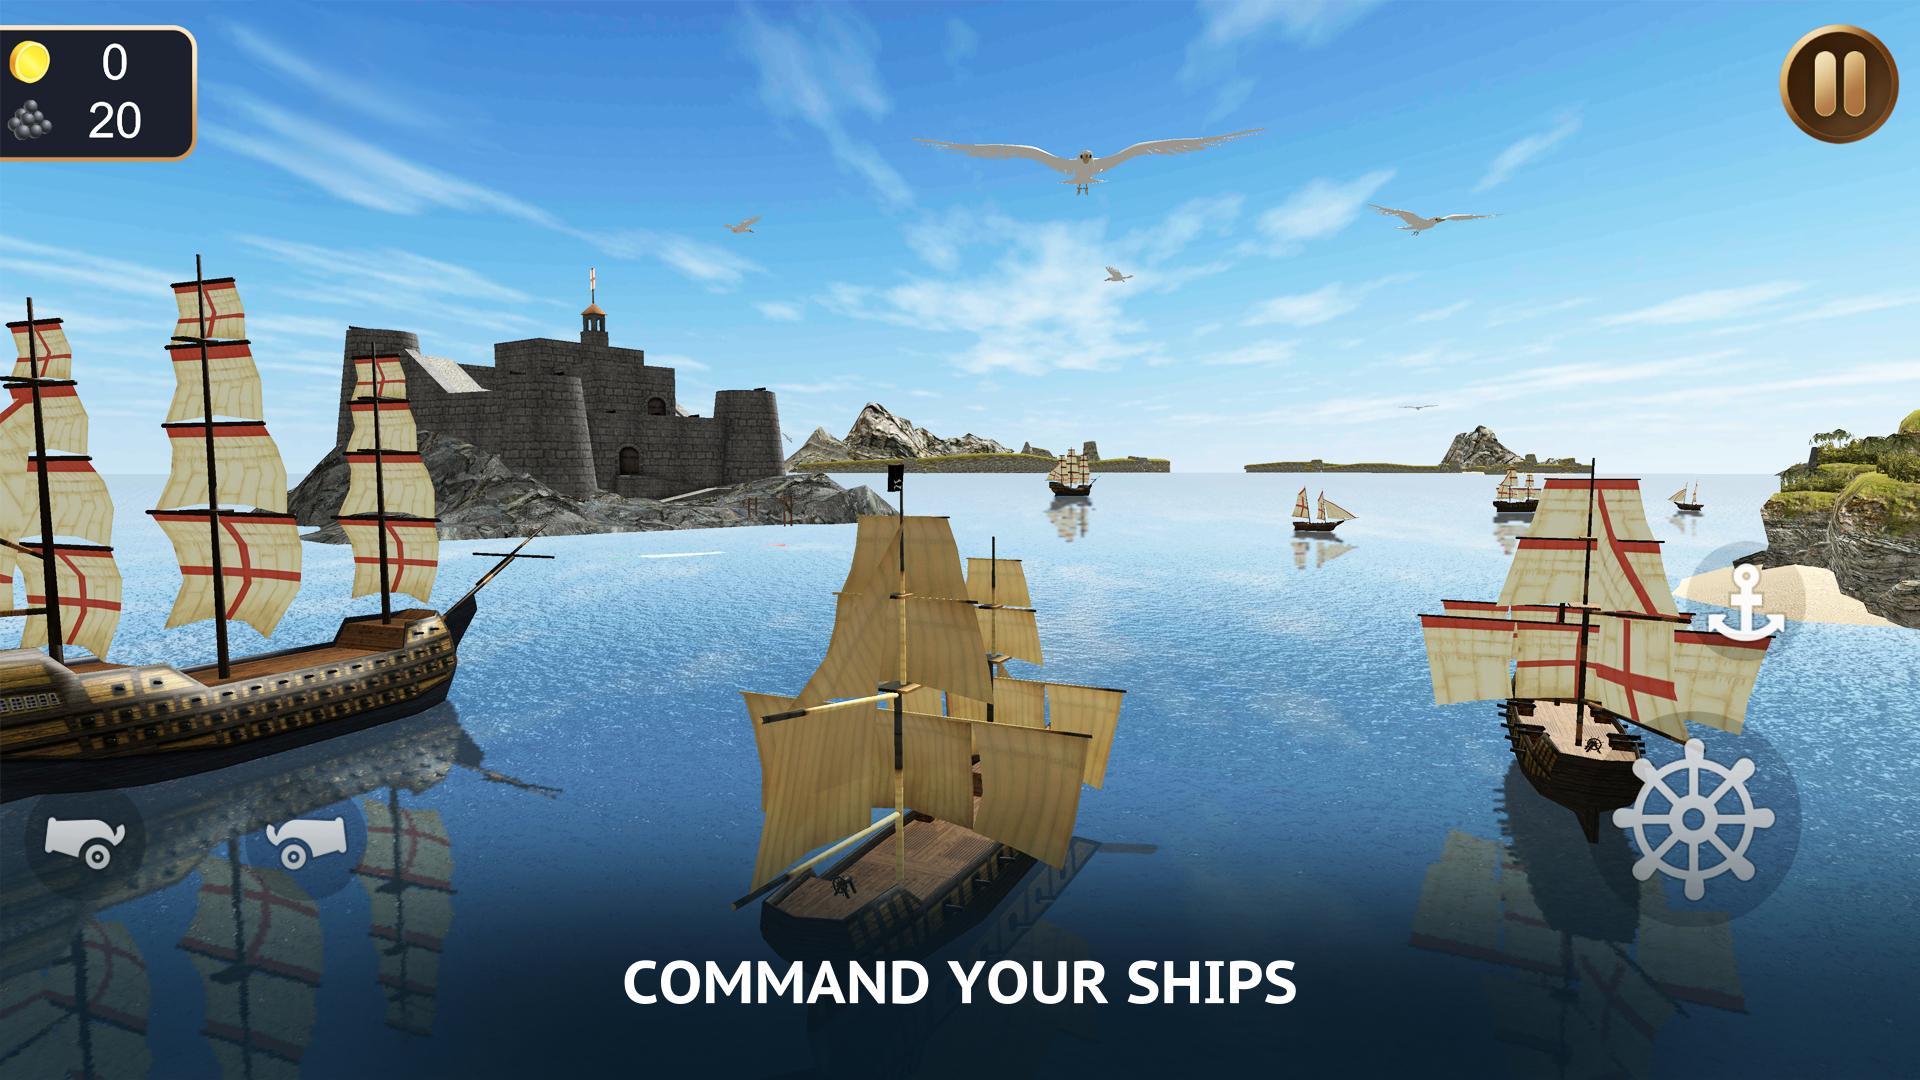 Игры строительство кораблей. Симс 3 Pirate ship. Pirates: Sea Battle игра. Симс 3 корабль пиратов. Игра про торговлю на кораблях.